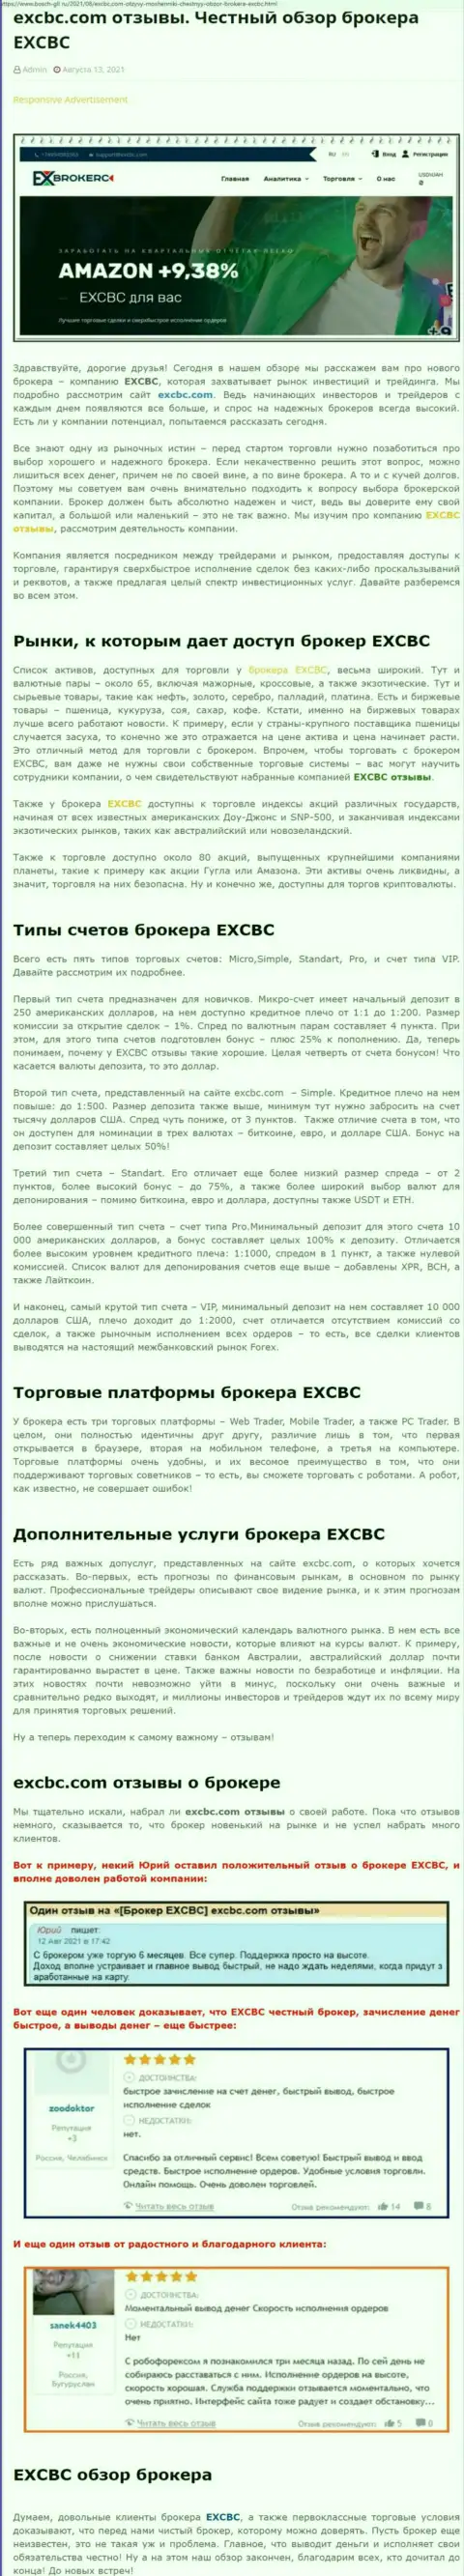 Честный обзор деятельности форекс брокера ЕИксБрокерс на портале Бош-Гил Ру